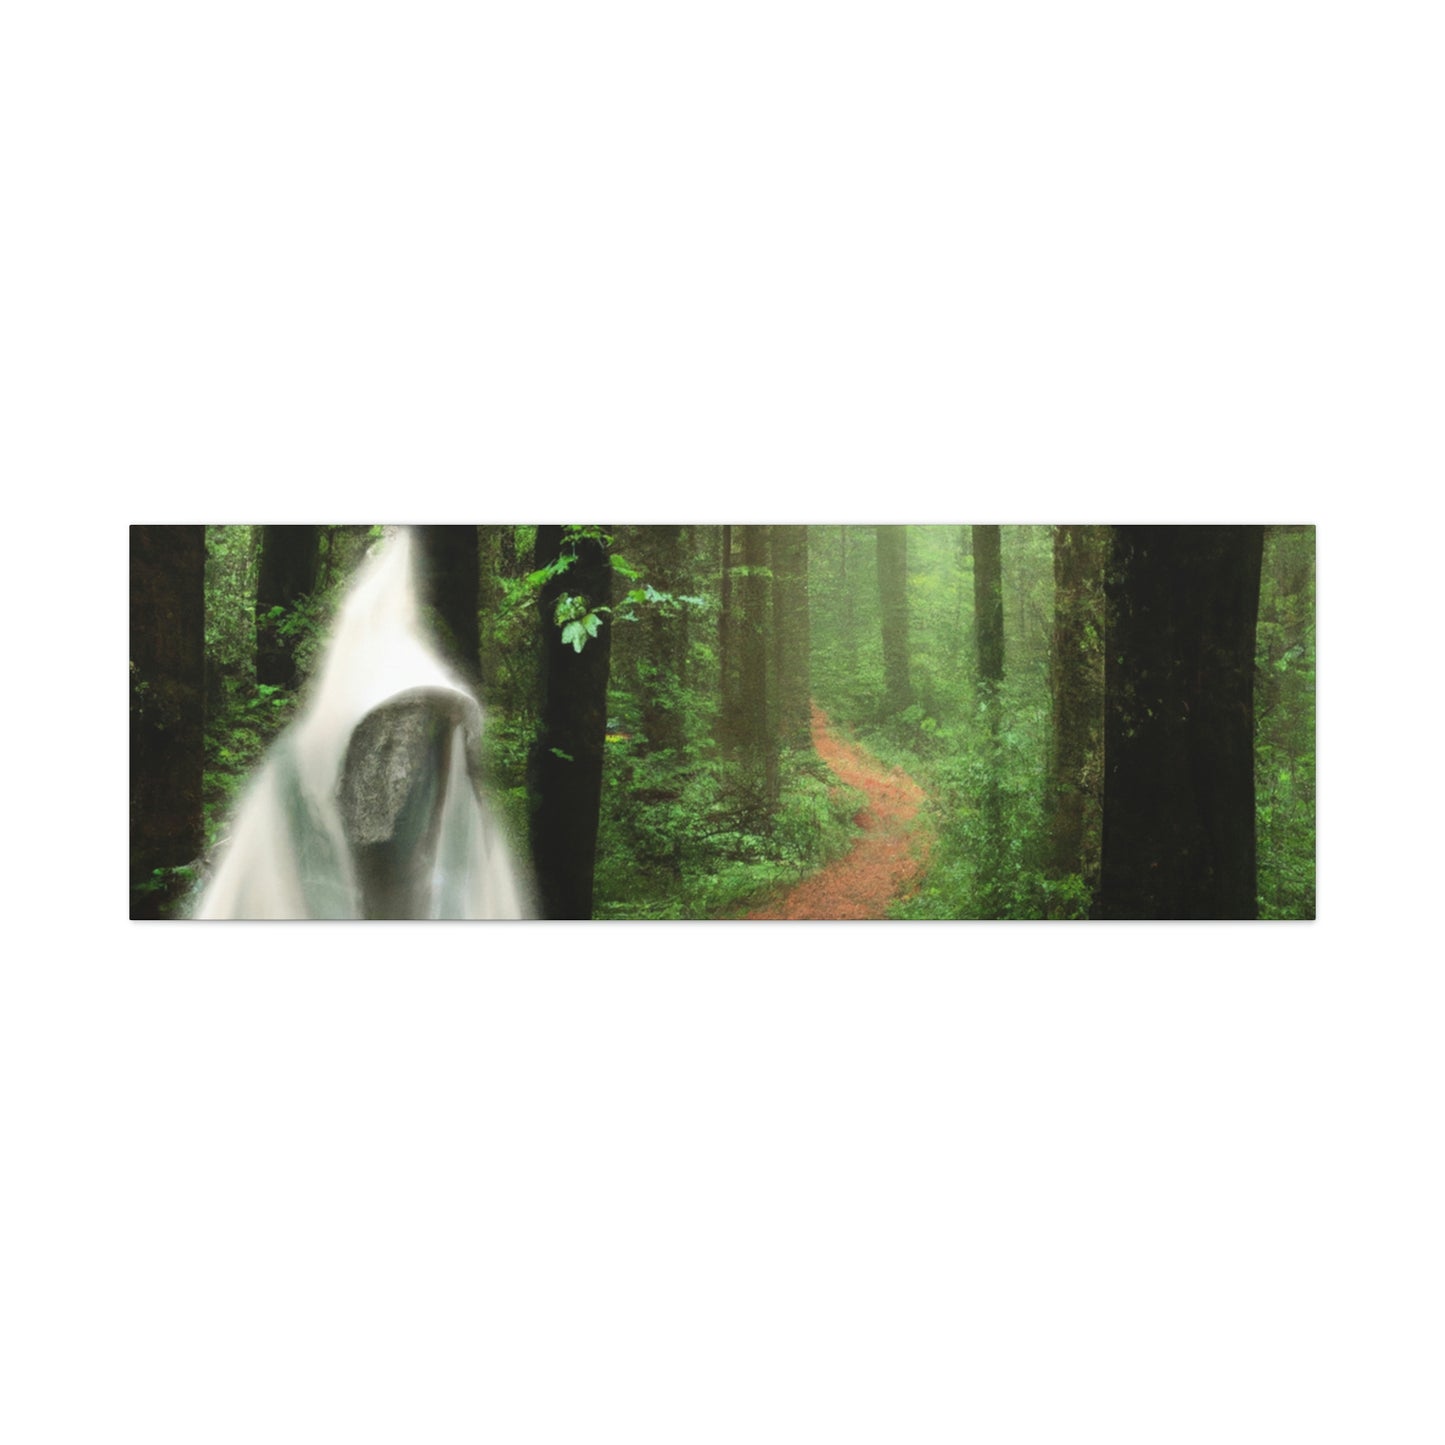 La guía del bosque misterioso - The Alien Canva